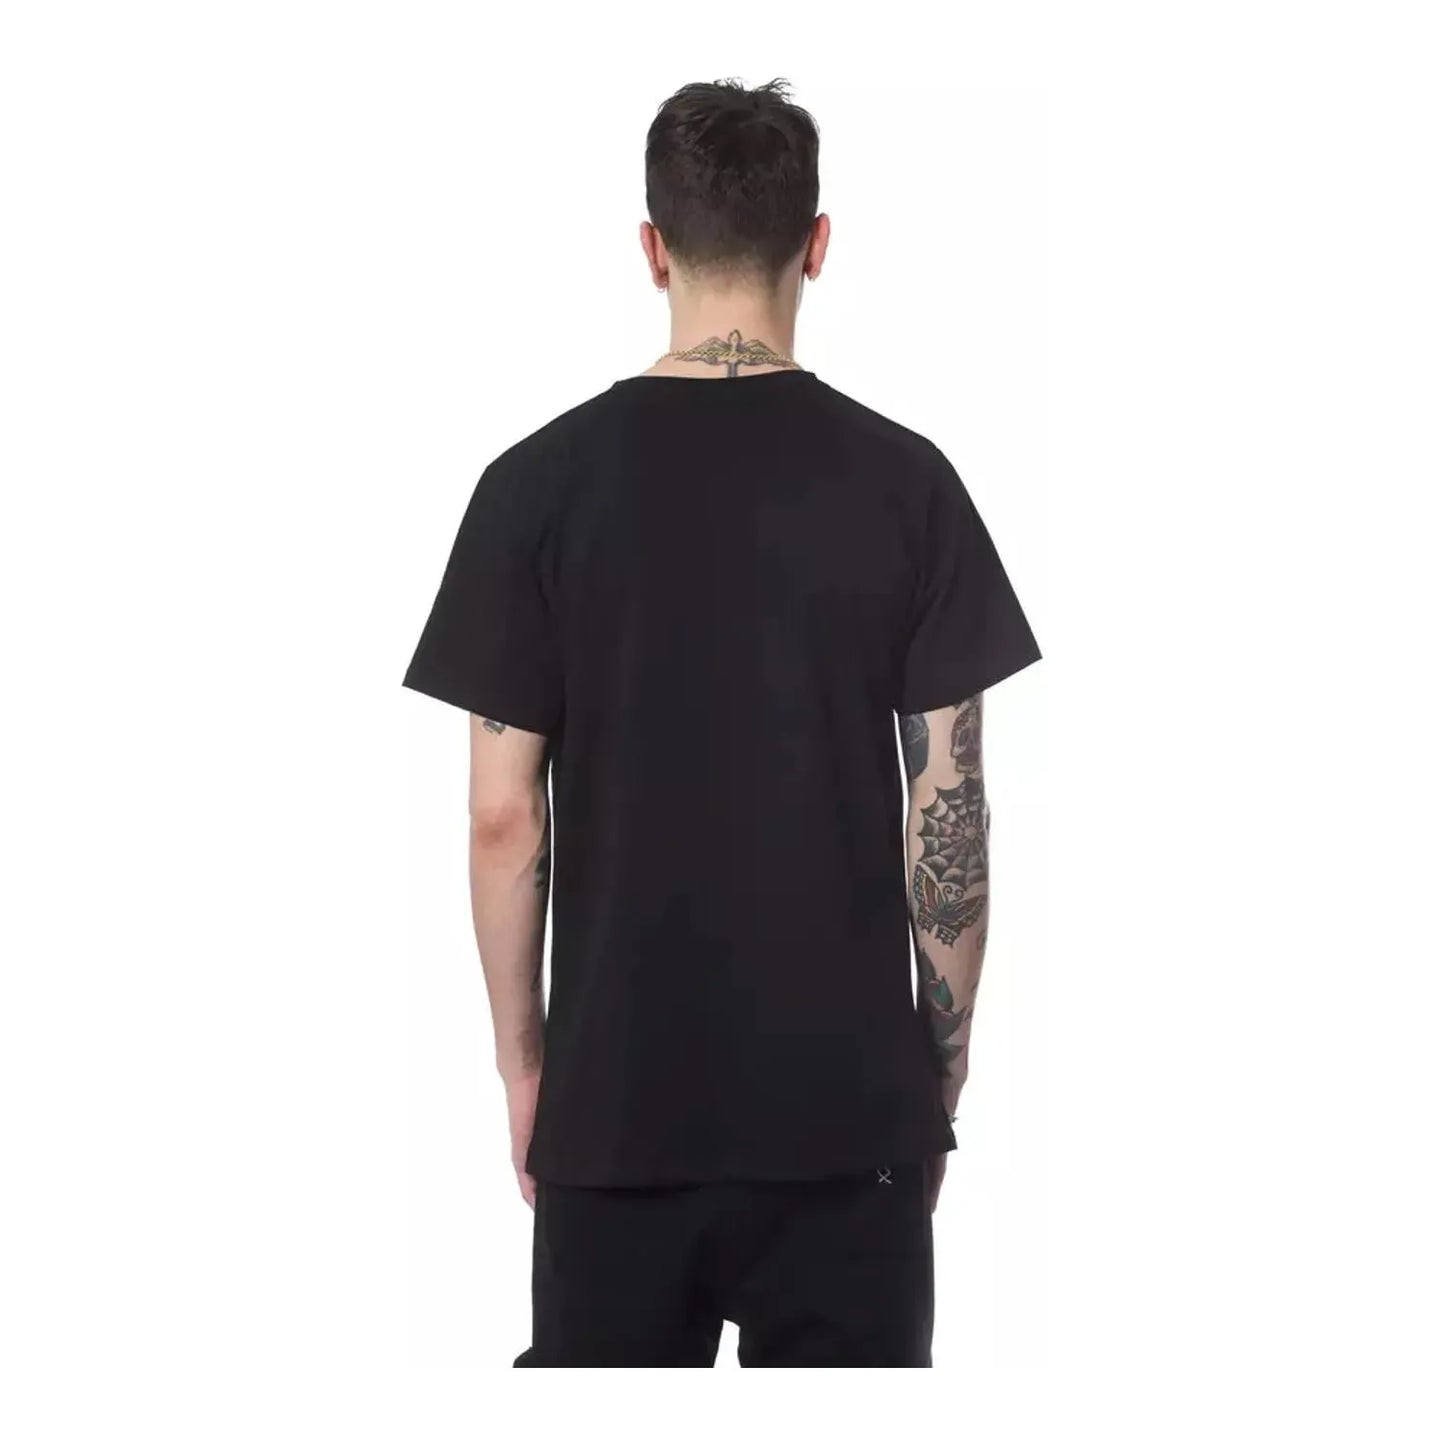 Nicolo Tonetto Elegant Round Neck Printed Tee nero-black-t-shirt-10